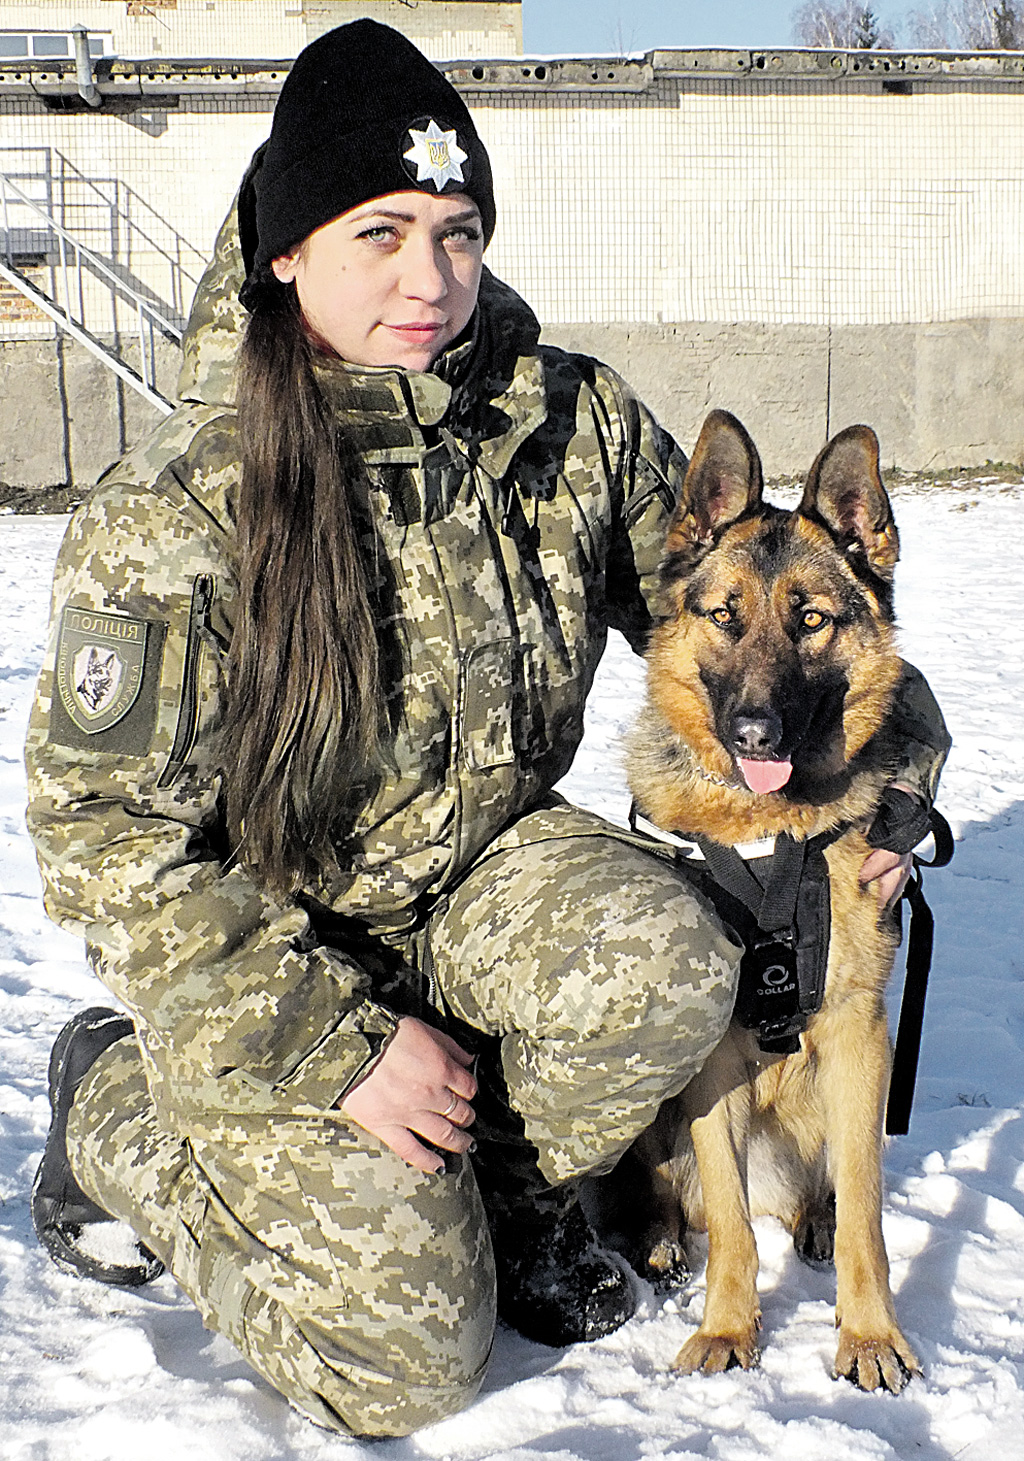 Єдина в обласній поліції жінка-кінолог Анна Грачова: “Рік Собаки ми зустріли на службі!”